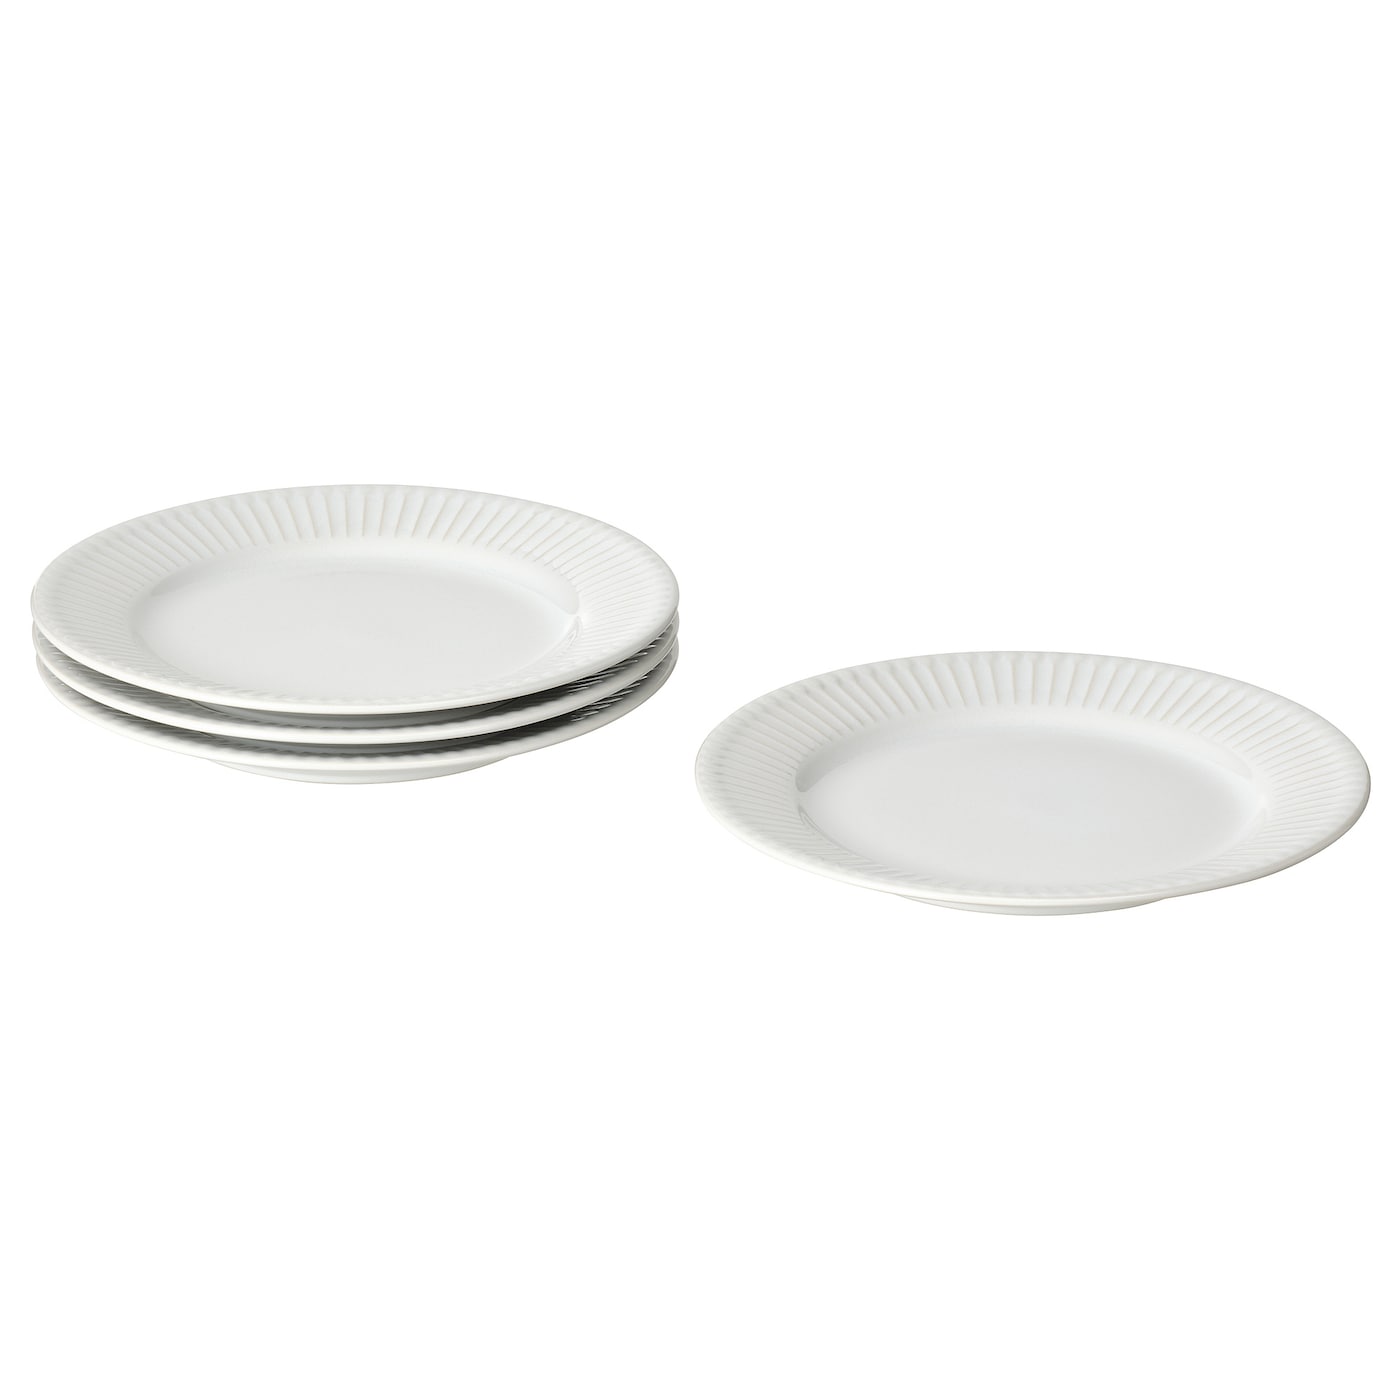 Набор тарелок, 4 шт. - IKEA STRIMMIG, 21 см, белый, СТРИММИГ ИКЕА